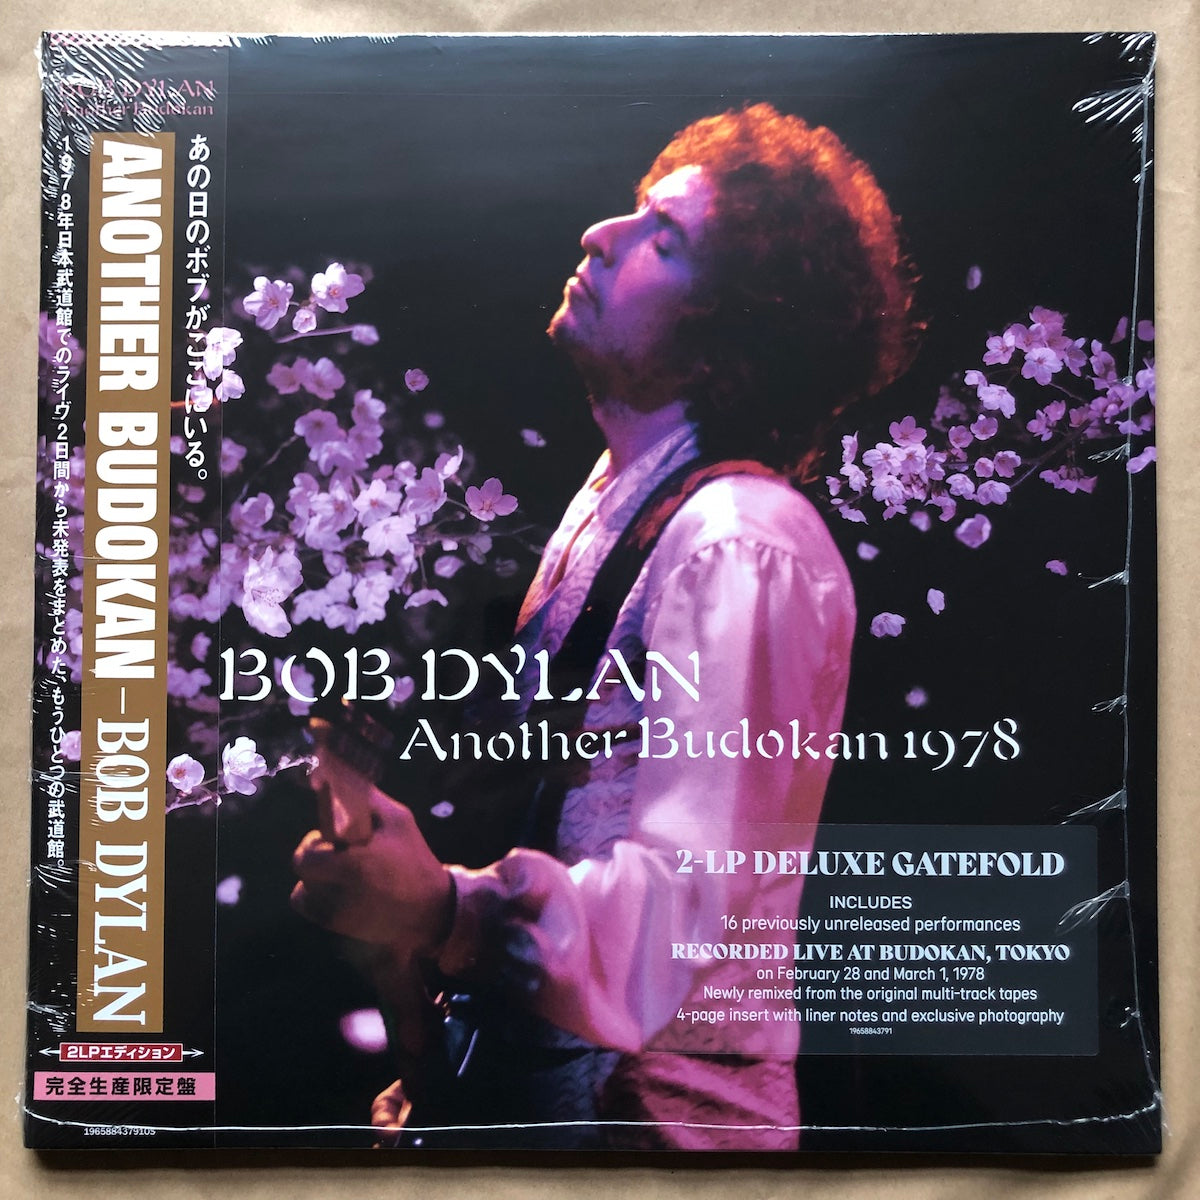 Another Budokan 1978: Double Vinyl LP